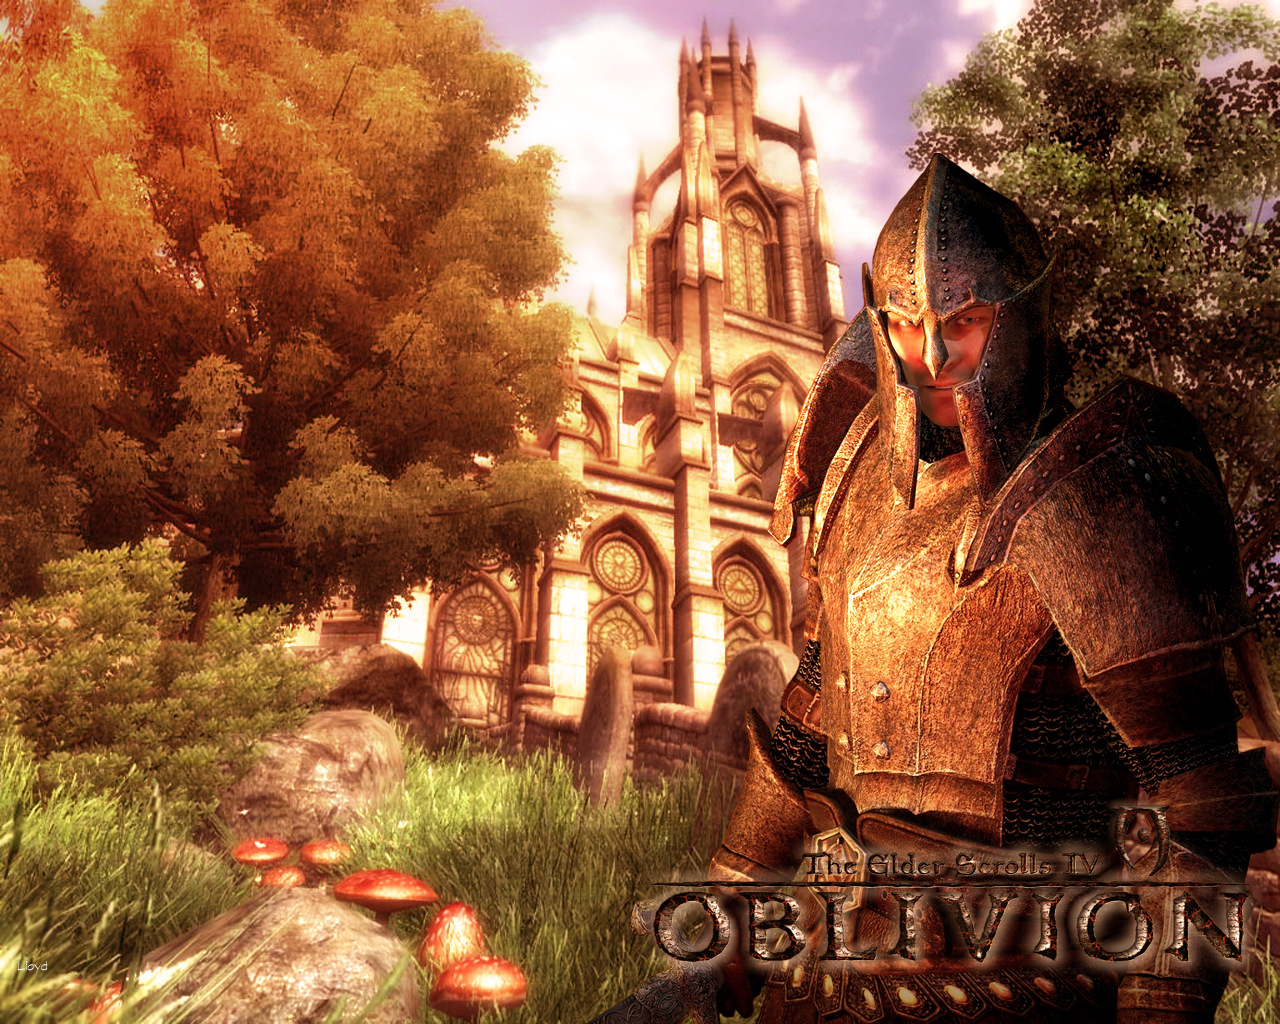 The Elder Scrolls IV: Oblivion Wallpapers